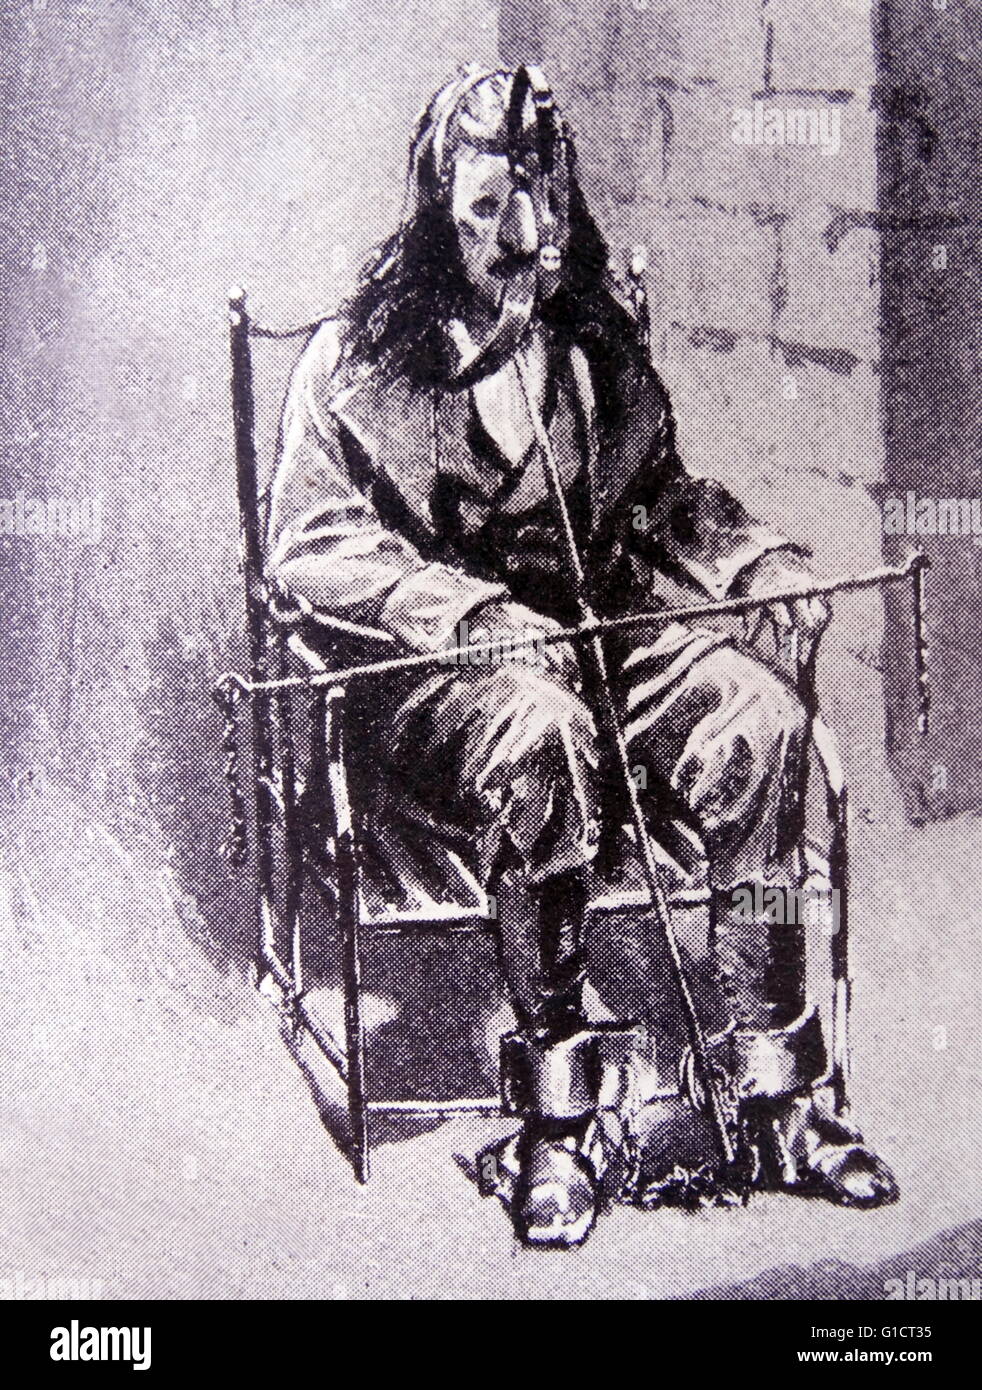 Siglo XVIII la tortura de un preso en una máscara metálica y cadenas Foto de stock